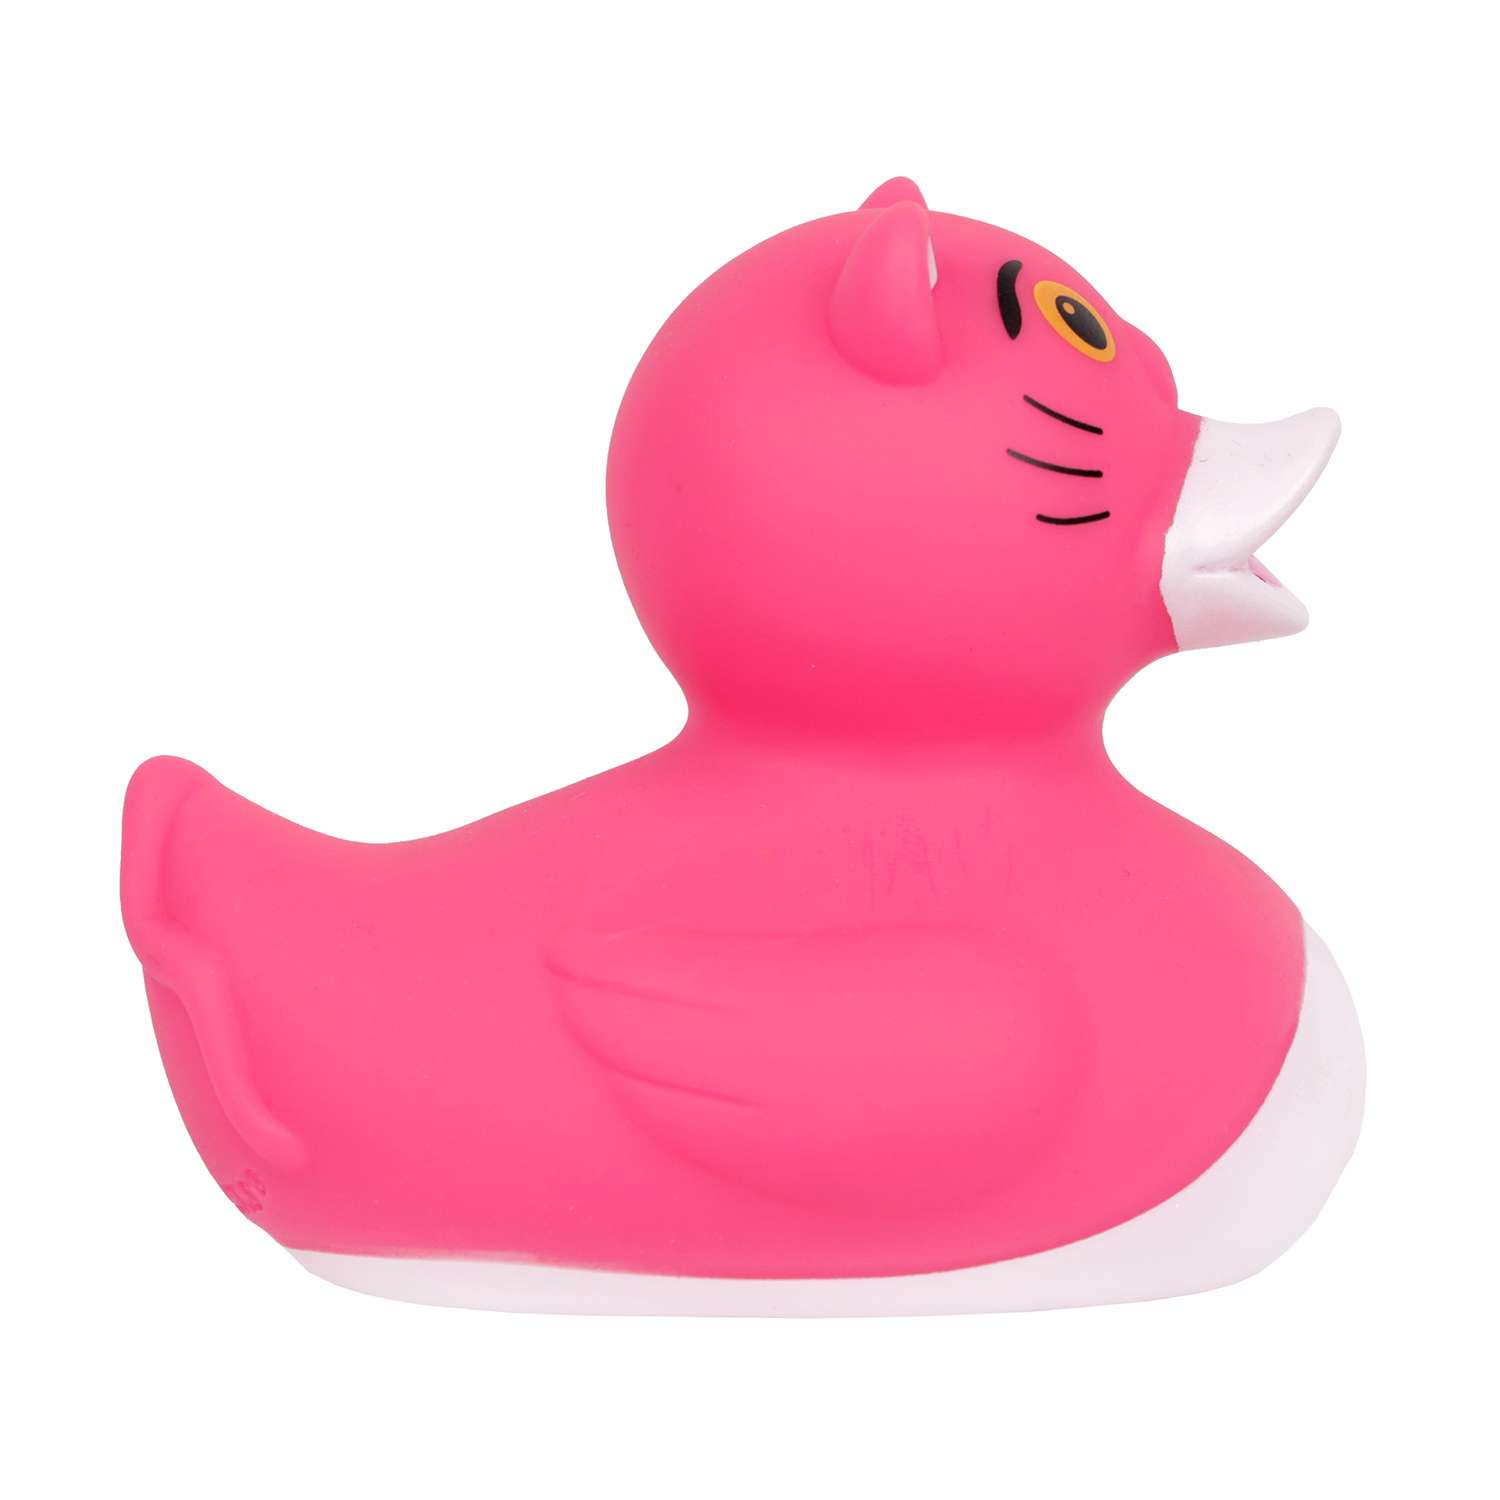 Игрушка для ванны сувенир Funny ducks Розовая пантера уточка 1314 - фото 3